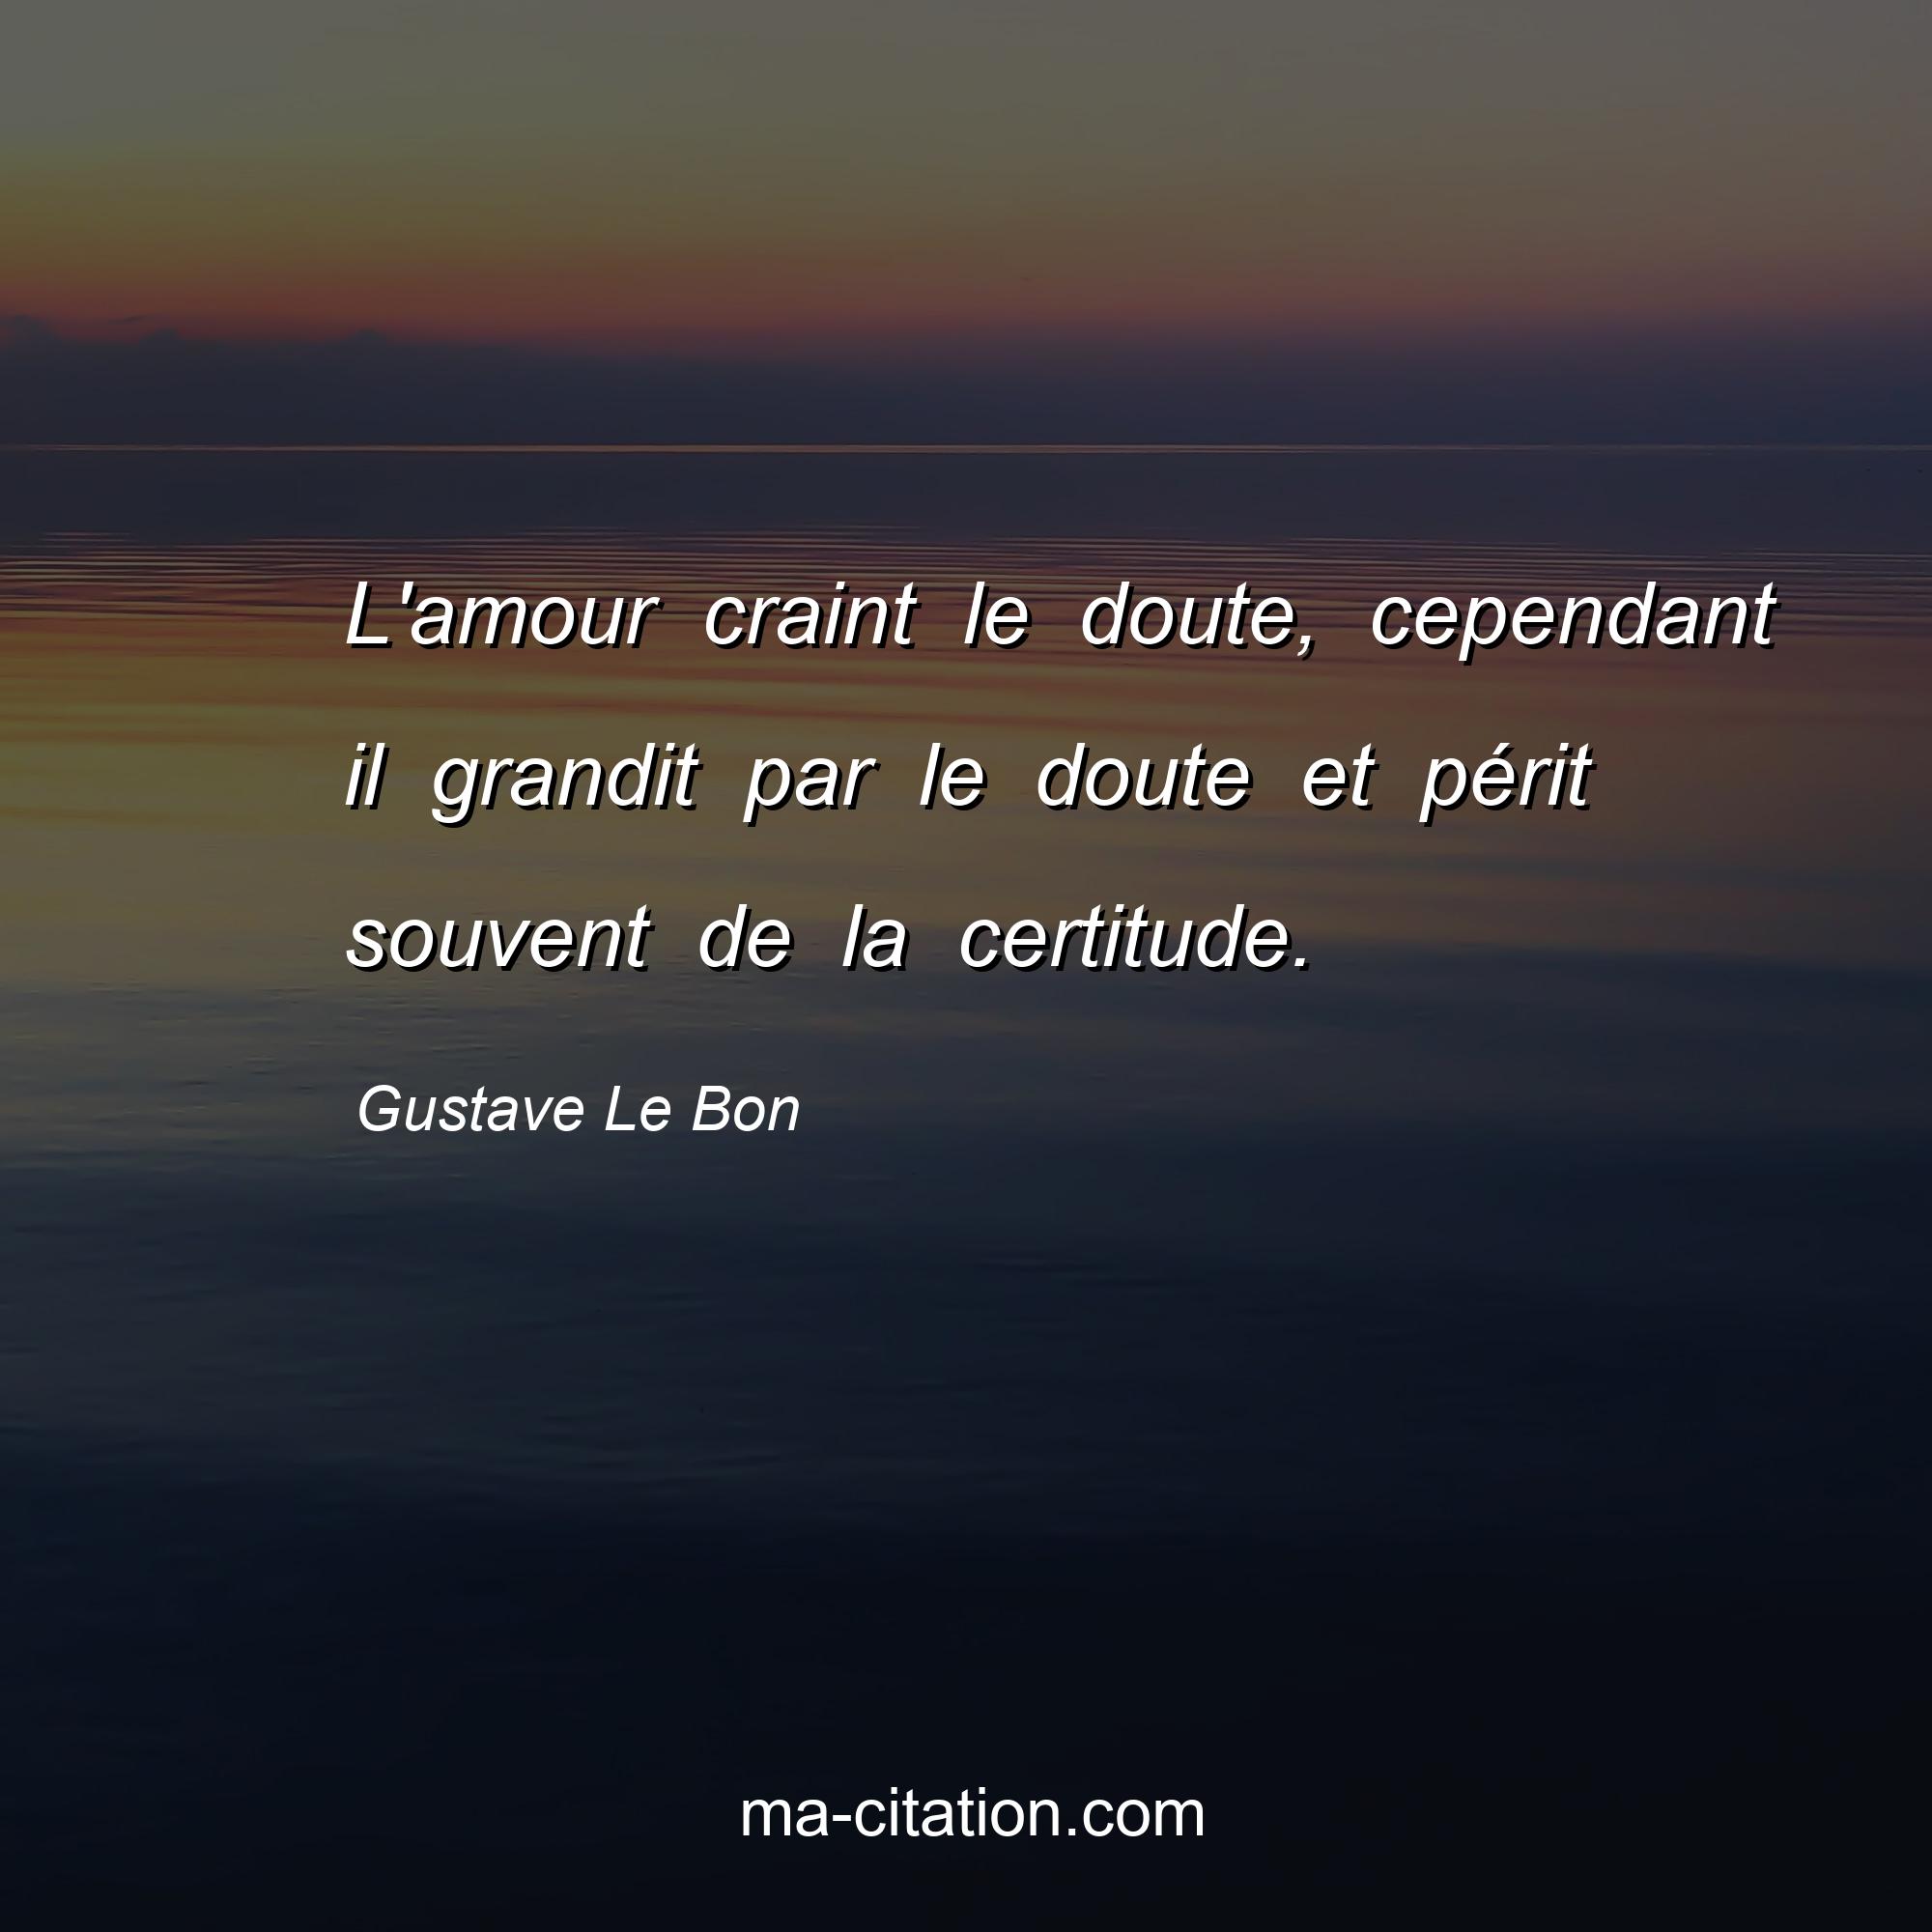 Gustave Le Bon : L'amour craint le doute, cependant il grandit par le doute et périt souvent de la certitude.